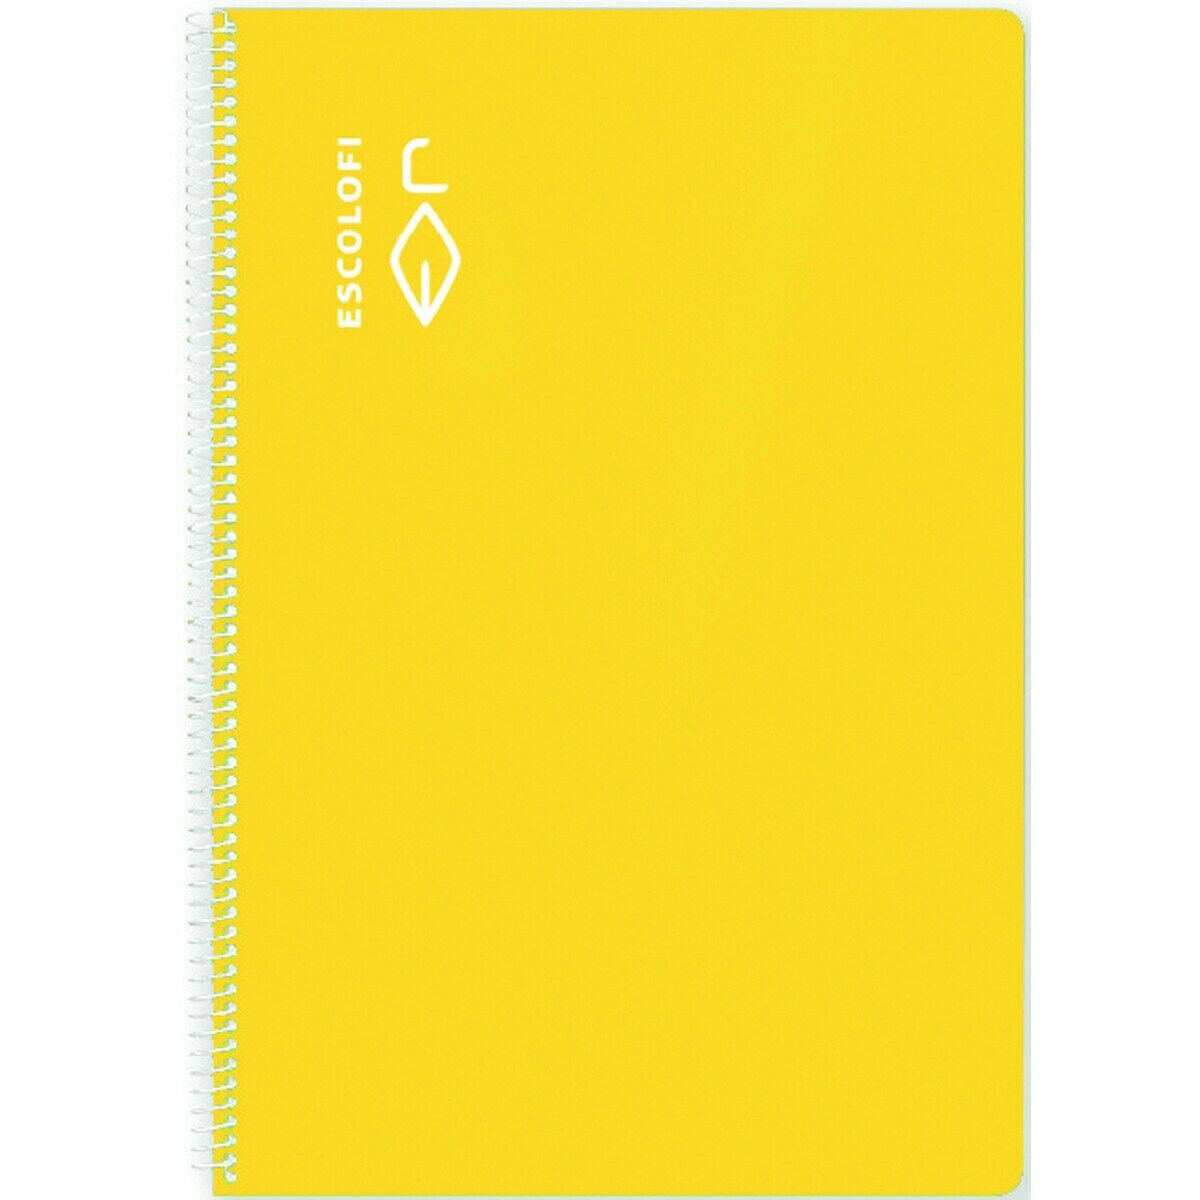 Notebook ESCOLOFI 5 Units Yellow Quarto 50 Sheets